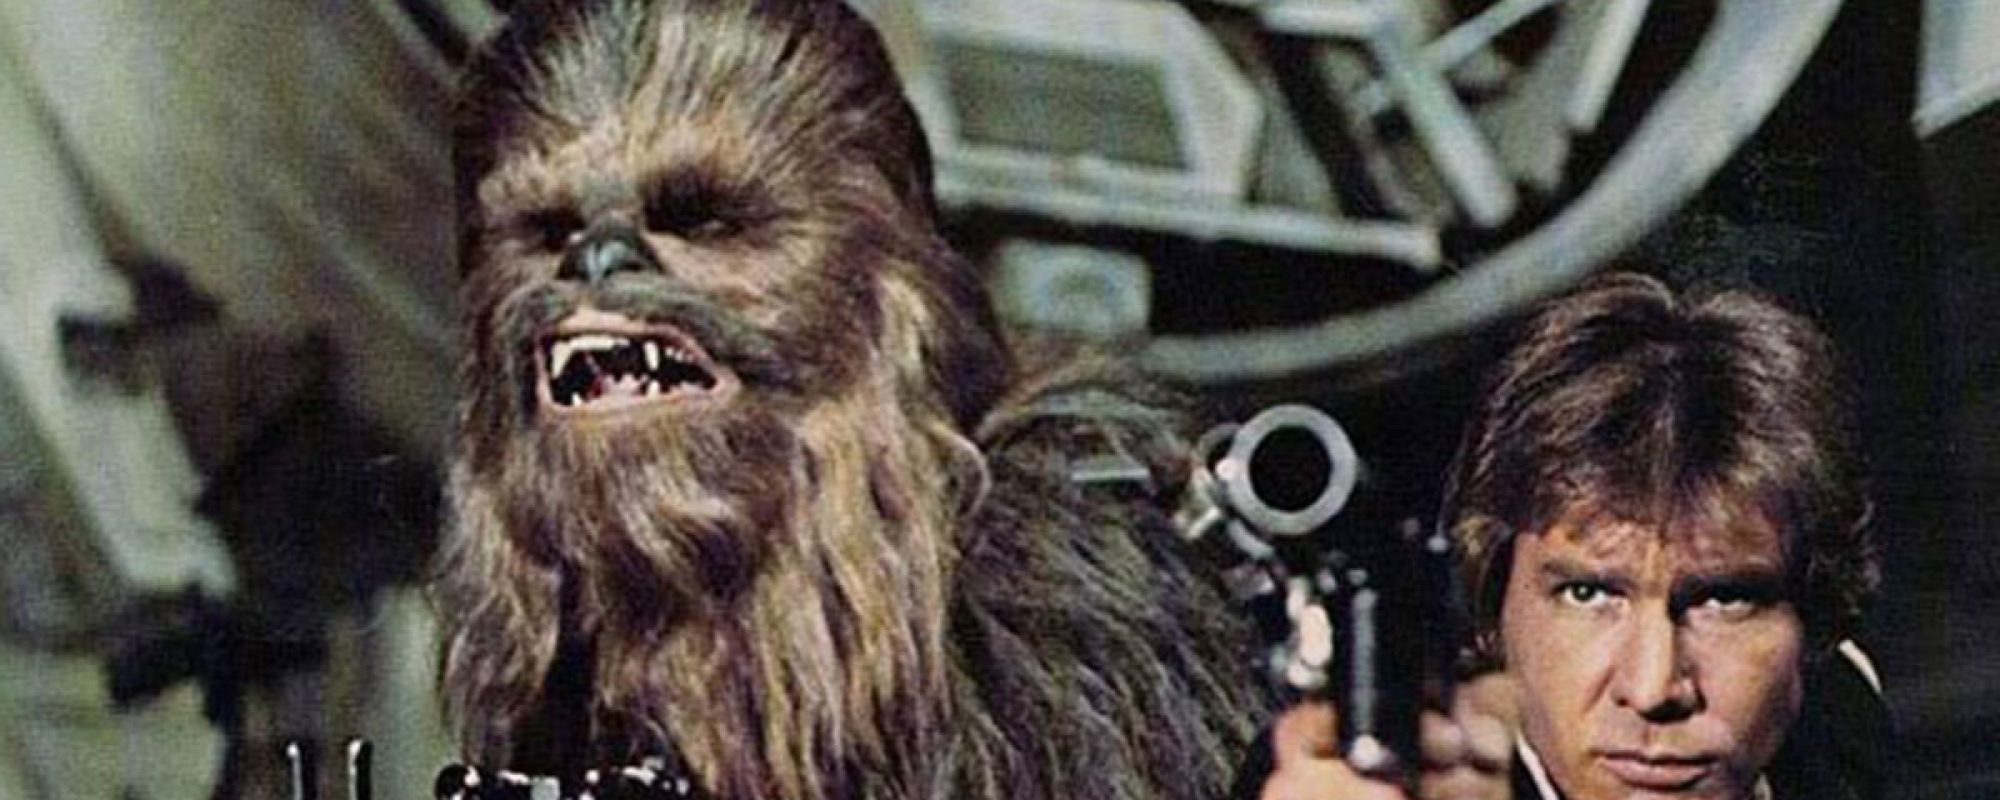 Star Wars Community Mourns Passing of Original Chewbacca, Peter Mayhew